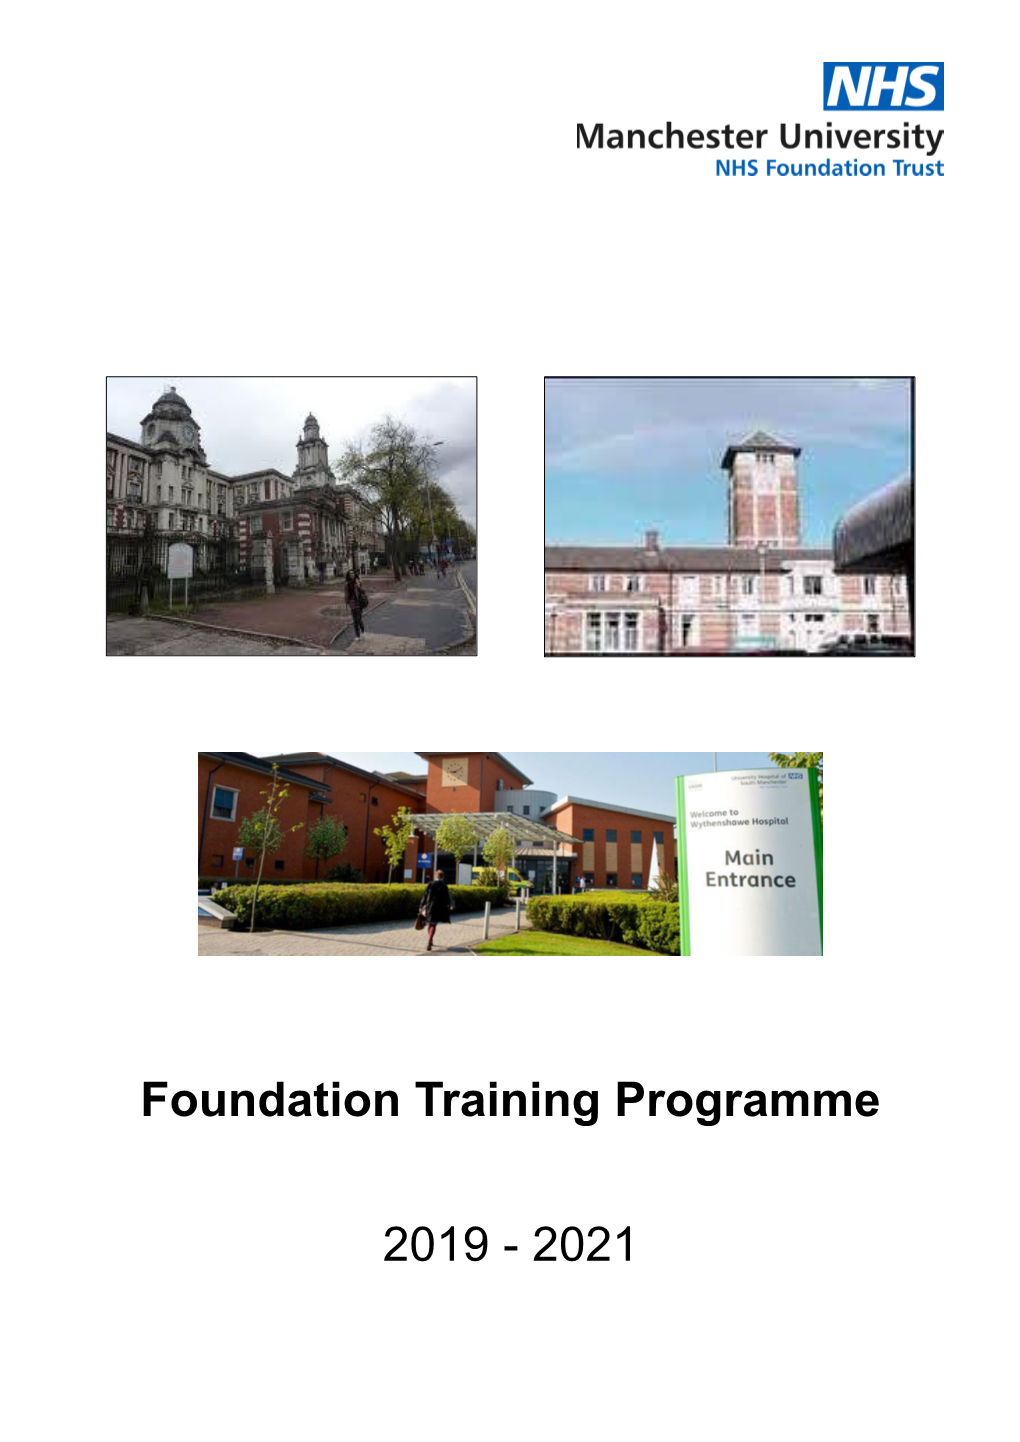 Foundation Training Programme 2019